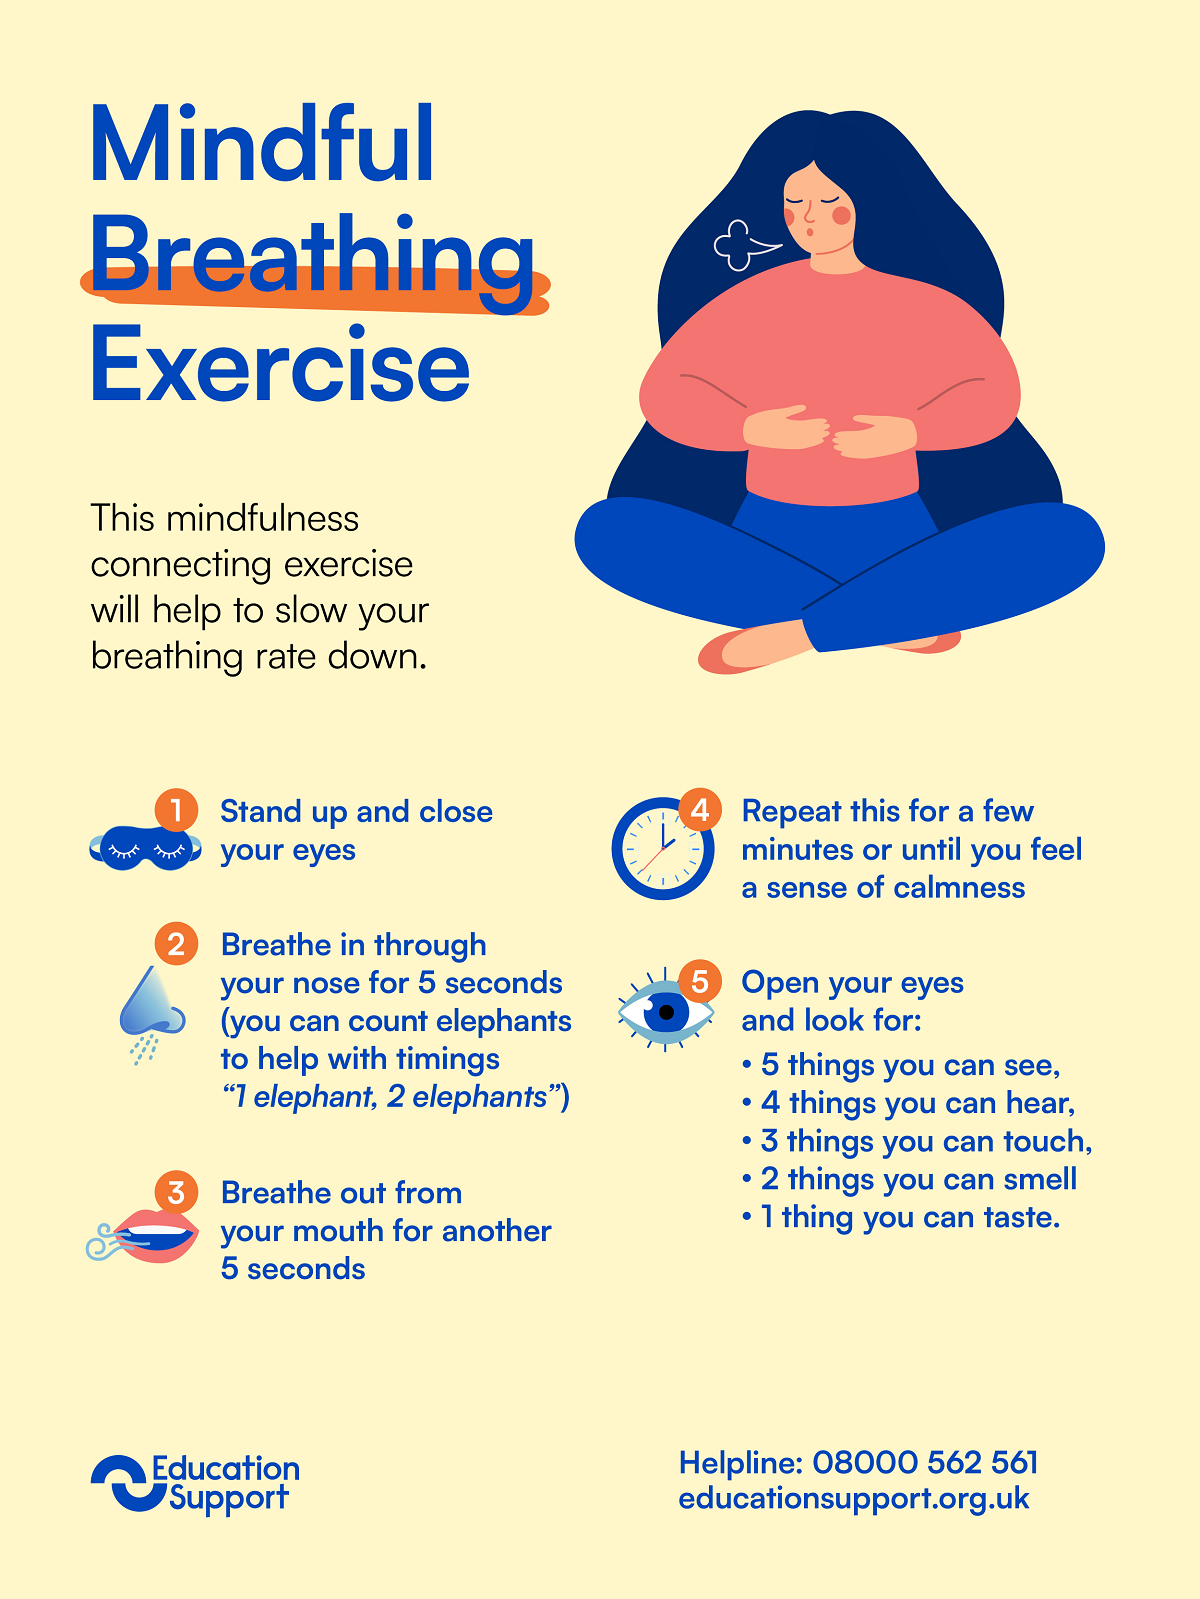 Mindful breathing exercise